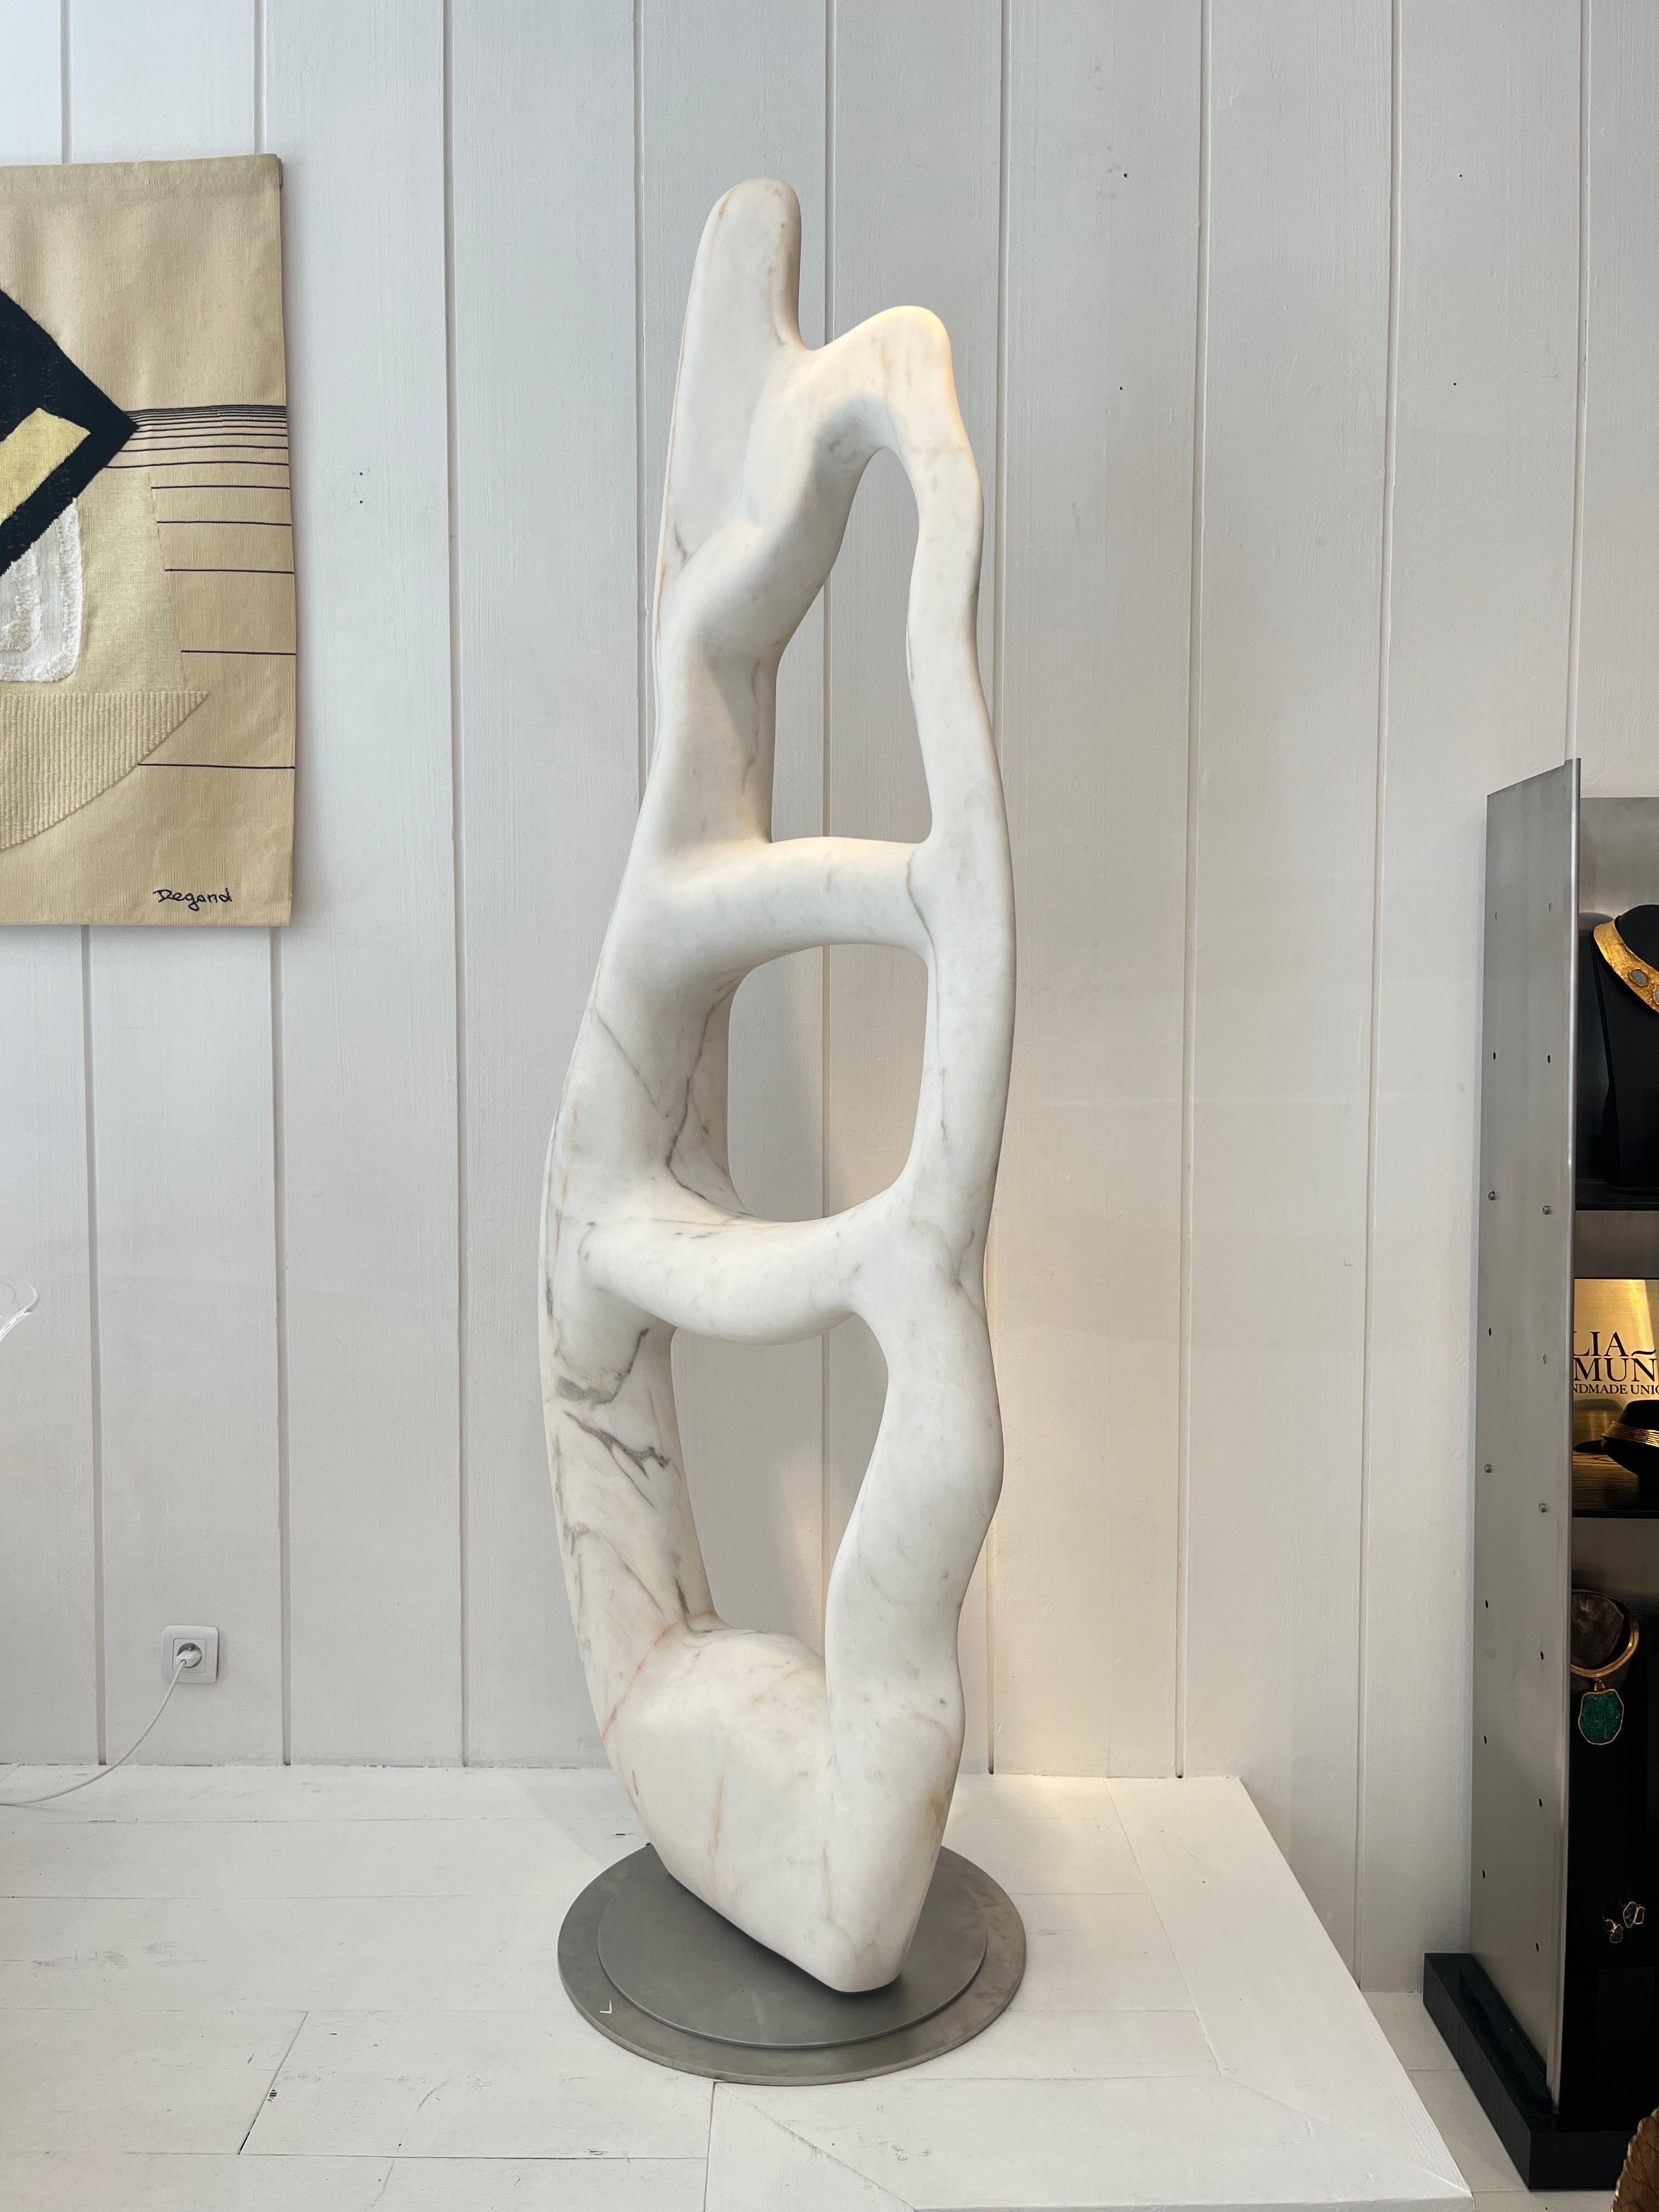 Jean-Frédéric Bourdier, monumentale Skulptur aus weißem Marmor 
Die Skulptur dreht sich um 360 Grad auf dem Stahlsockel der Steele
Estremoz-Marmor
Perfekt  zu  Orte außerhalb sein.
Signiert von der Künstlerin
Breite: 82 cm Höhe: 220 cm Durchmesser: